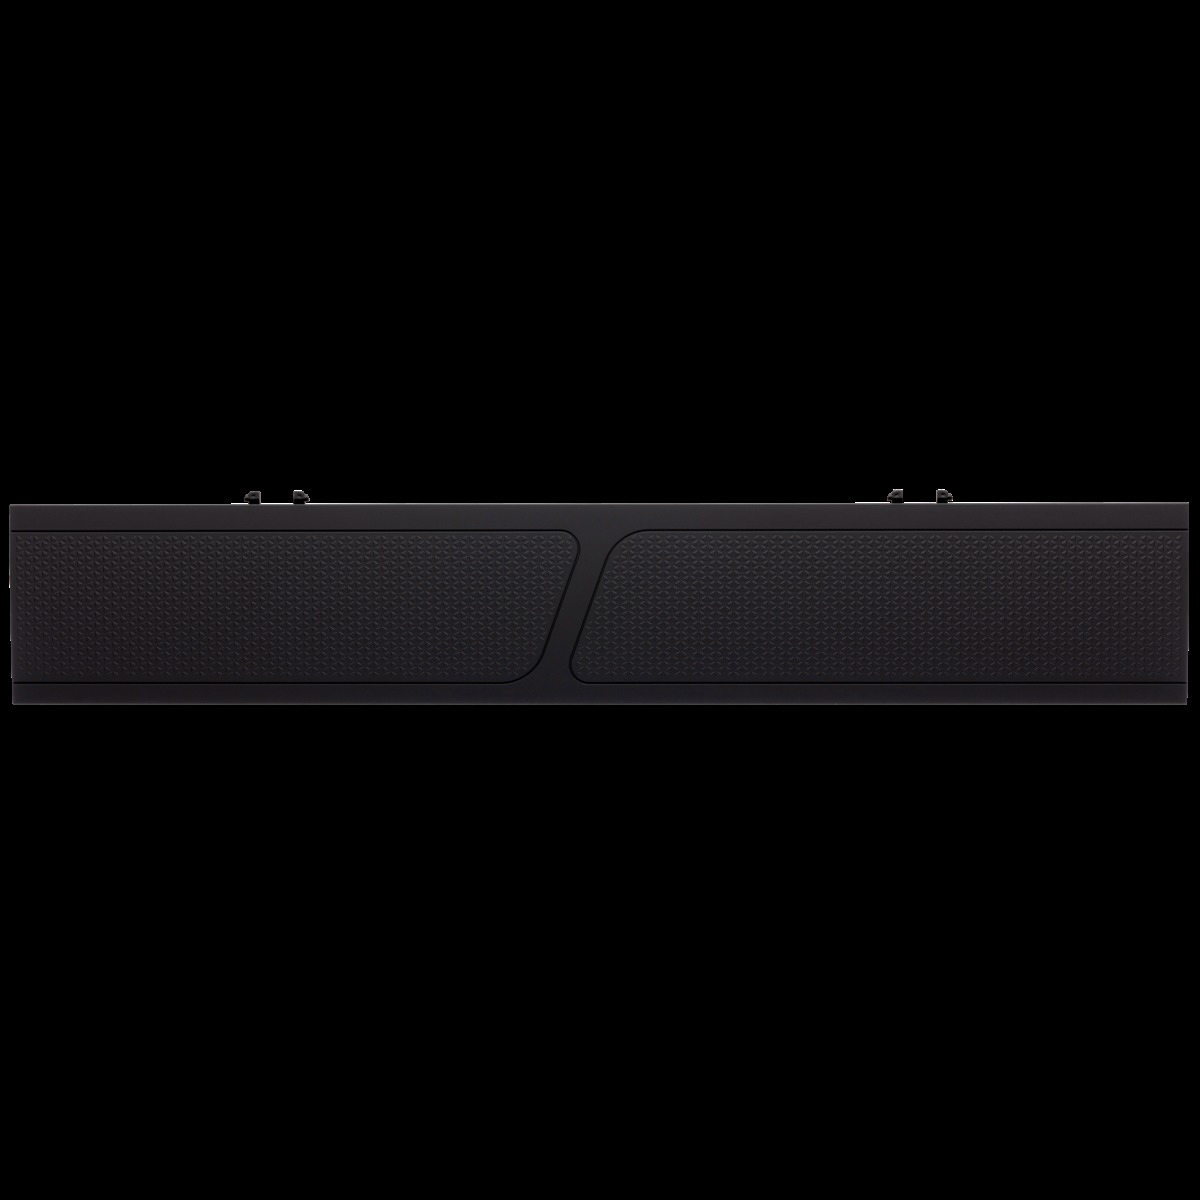 K70 RAPIDFIRE, CORSAIR Gaming Mechanisch, Tastatur, kabelgebunden, PROFILE MK.2 LOW Schwarz RGB